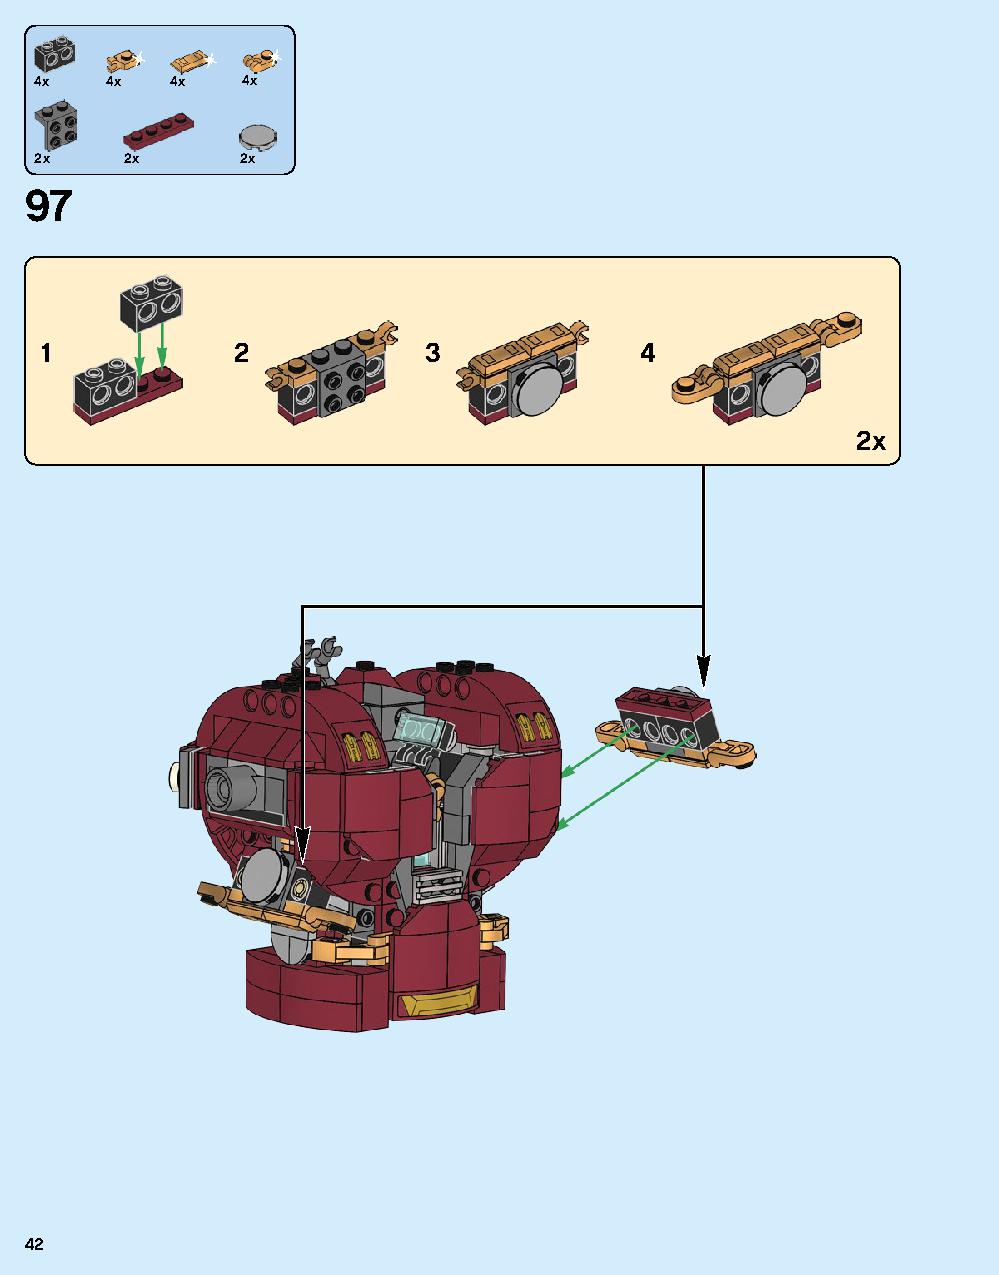 ハルクバスター：ウルトロン・エディション 76105 レゴの商品情報 レゴの説明書・組立方法 42 page